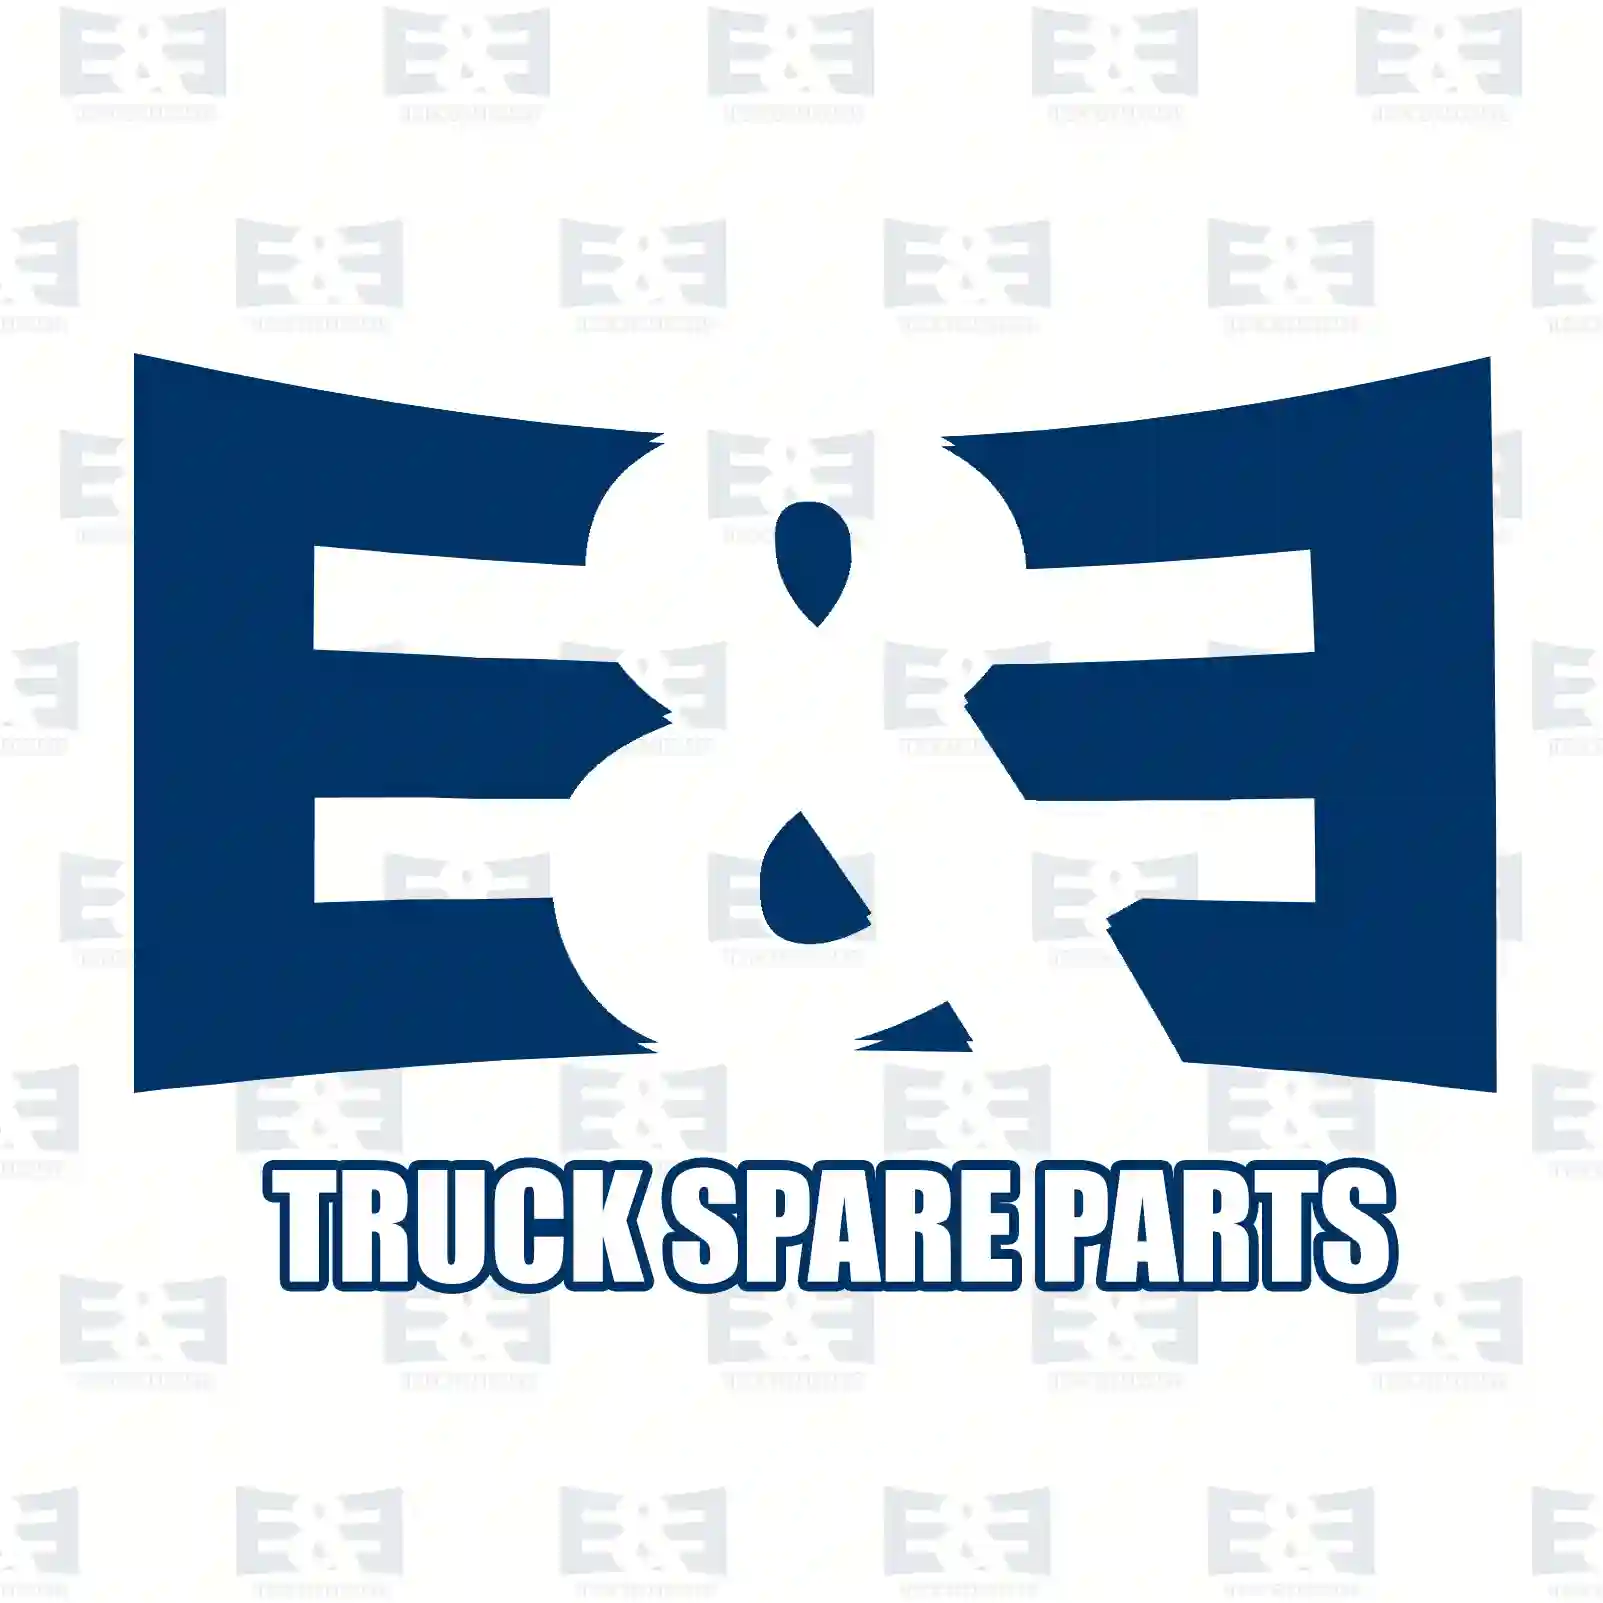 Brake drum, 2E2293994, 07180996, 07183046, 7180996, 7183046, , , ||  2E2293994 E&E Truck Spare Parts | Truck Spare Parts, Auotomotive Spare Parts Brake drum, 2E2293994, 07180996, 07183046, 7180996, 7183046, , , ||  2E2293994 E&E Truck Spare Parts | Truck Spare Parts, Auotomotive Spare Parts